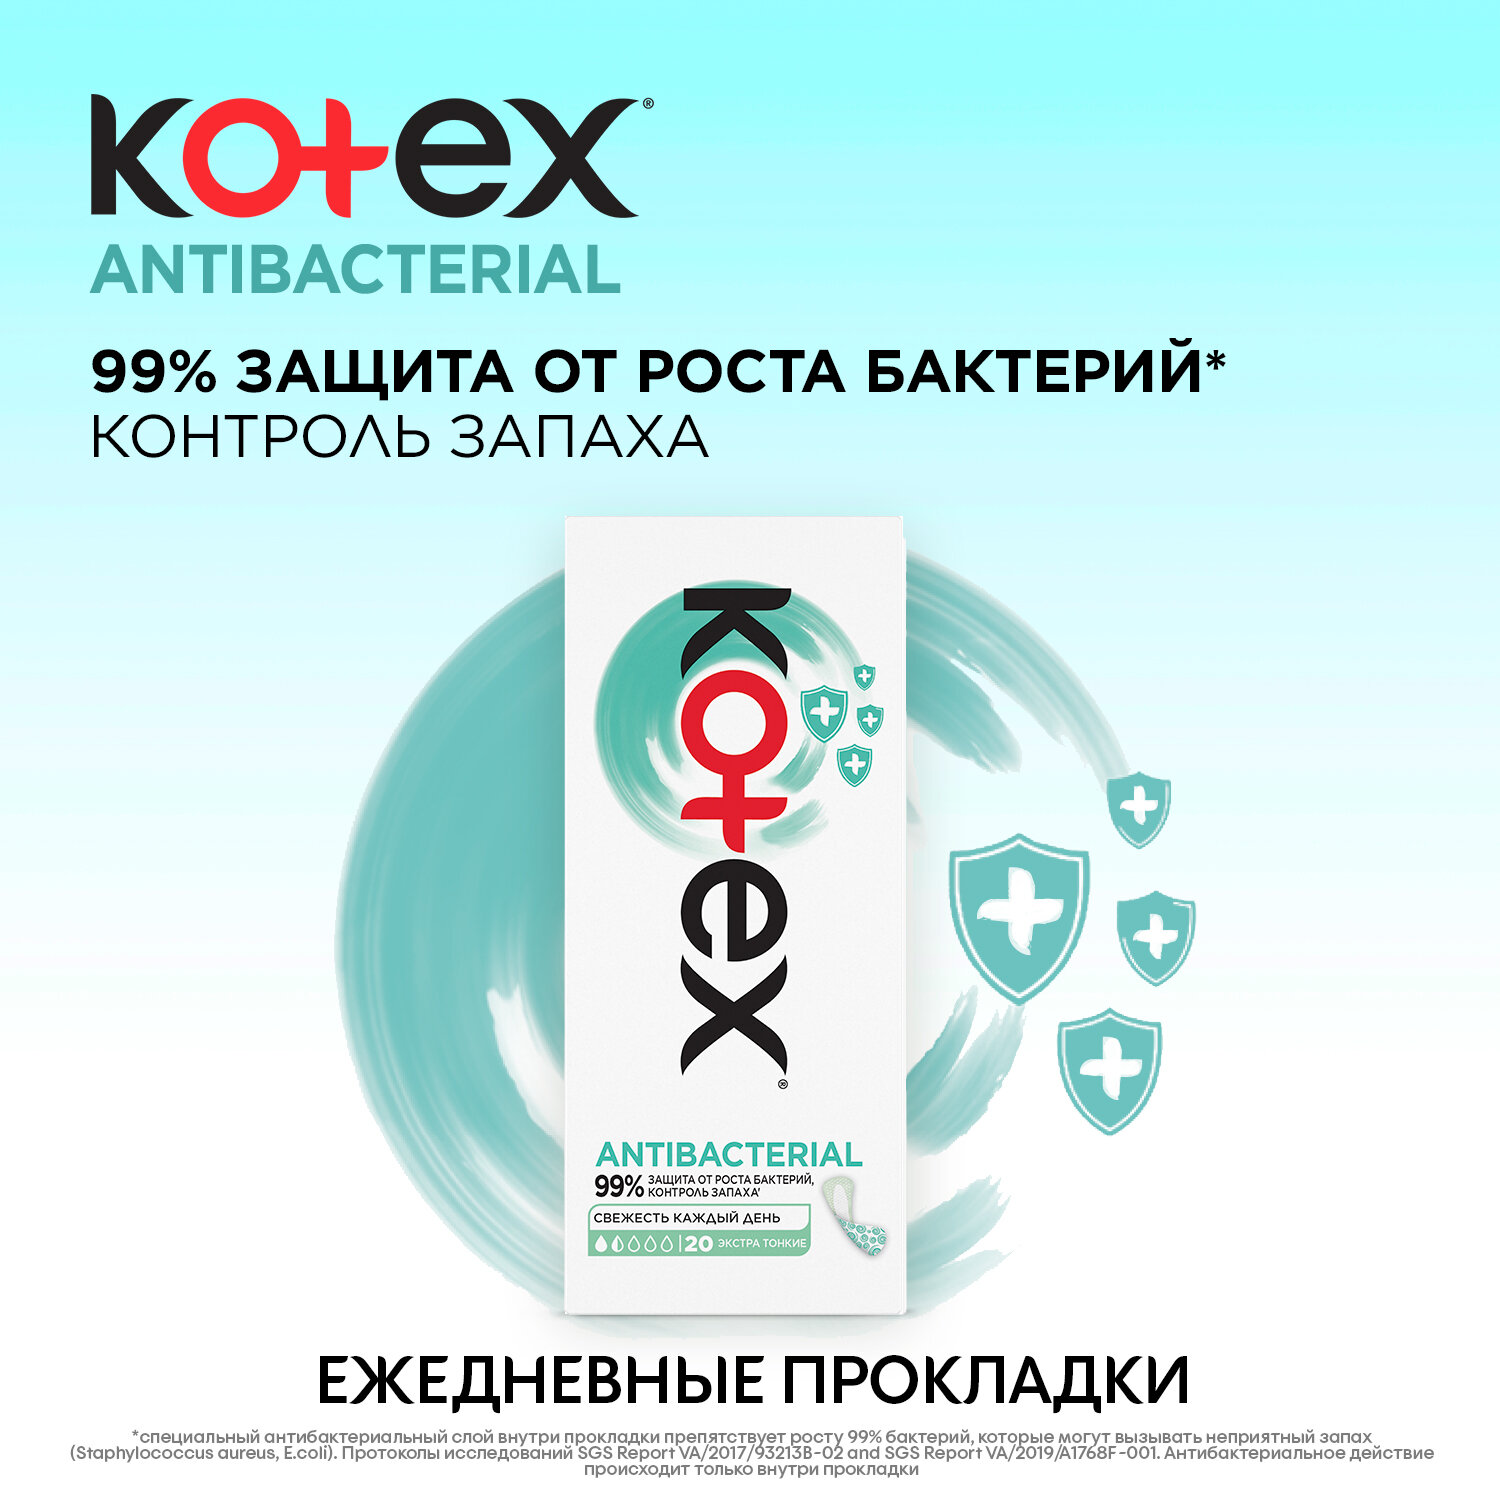 Ежедневные прокладки Kotex Antibacterial Экстра тонкие, 20шт.